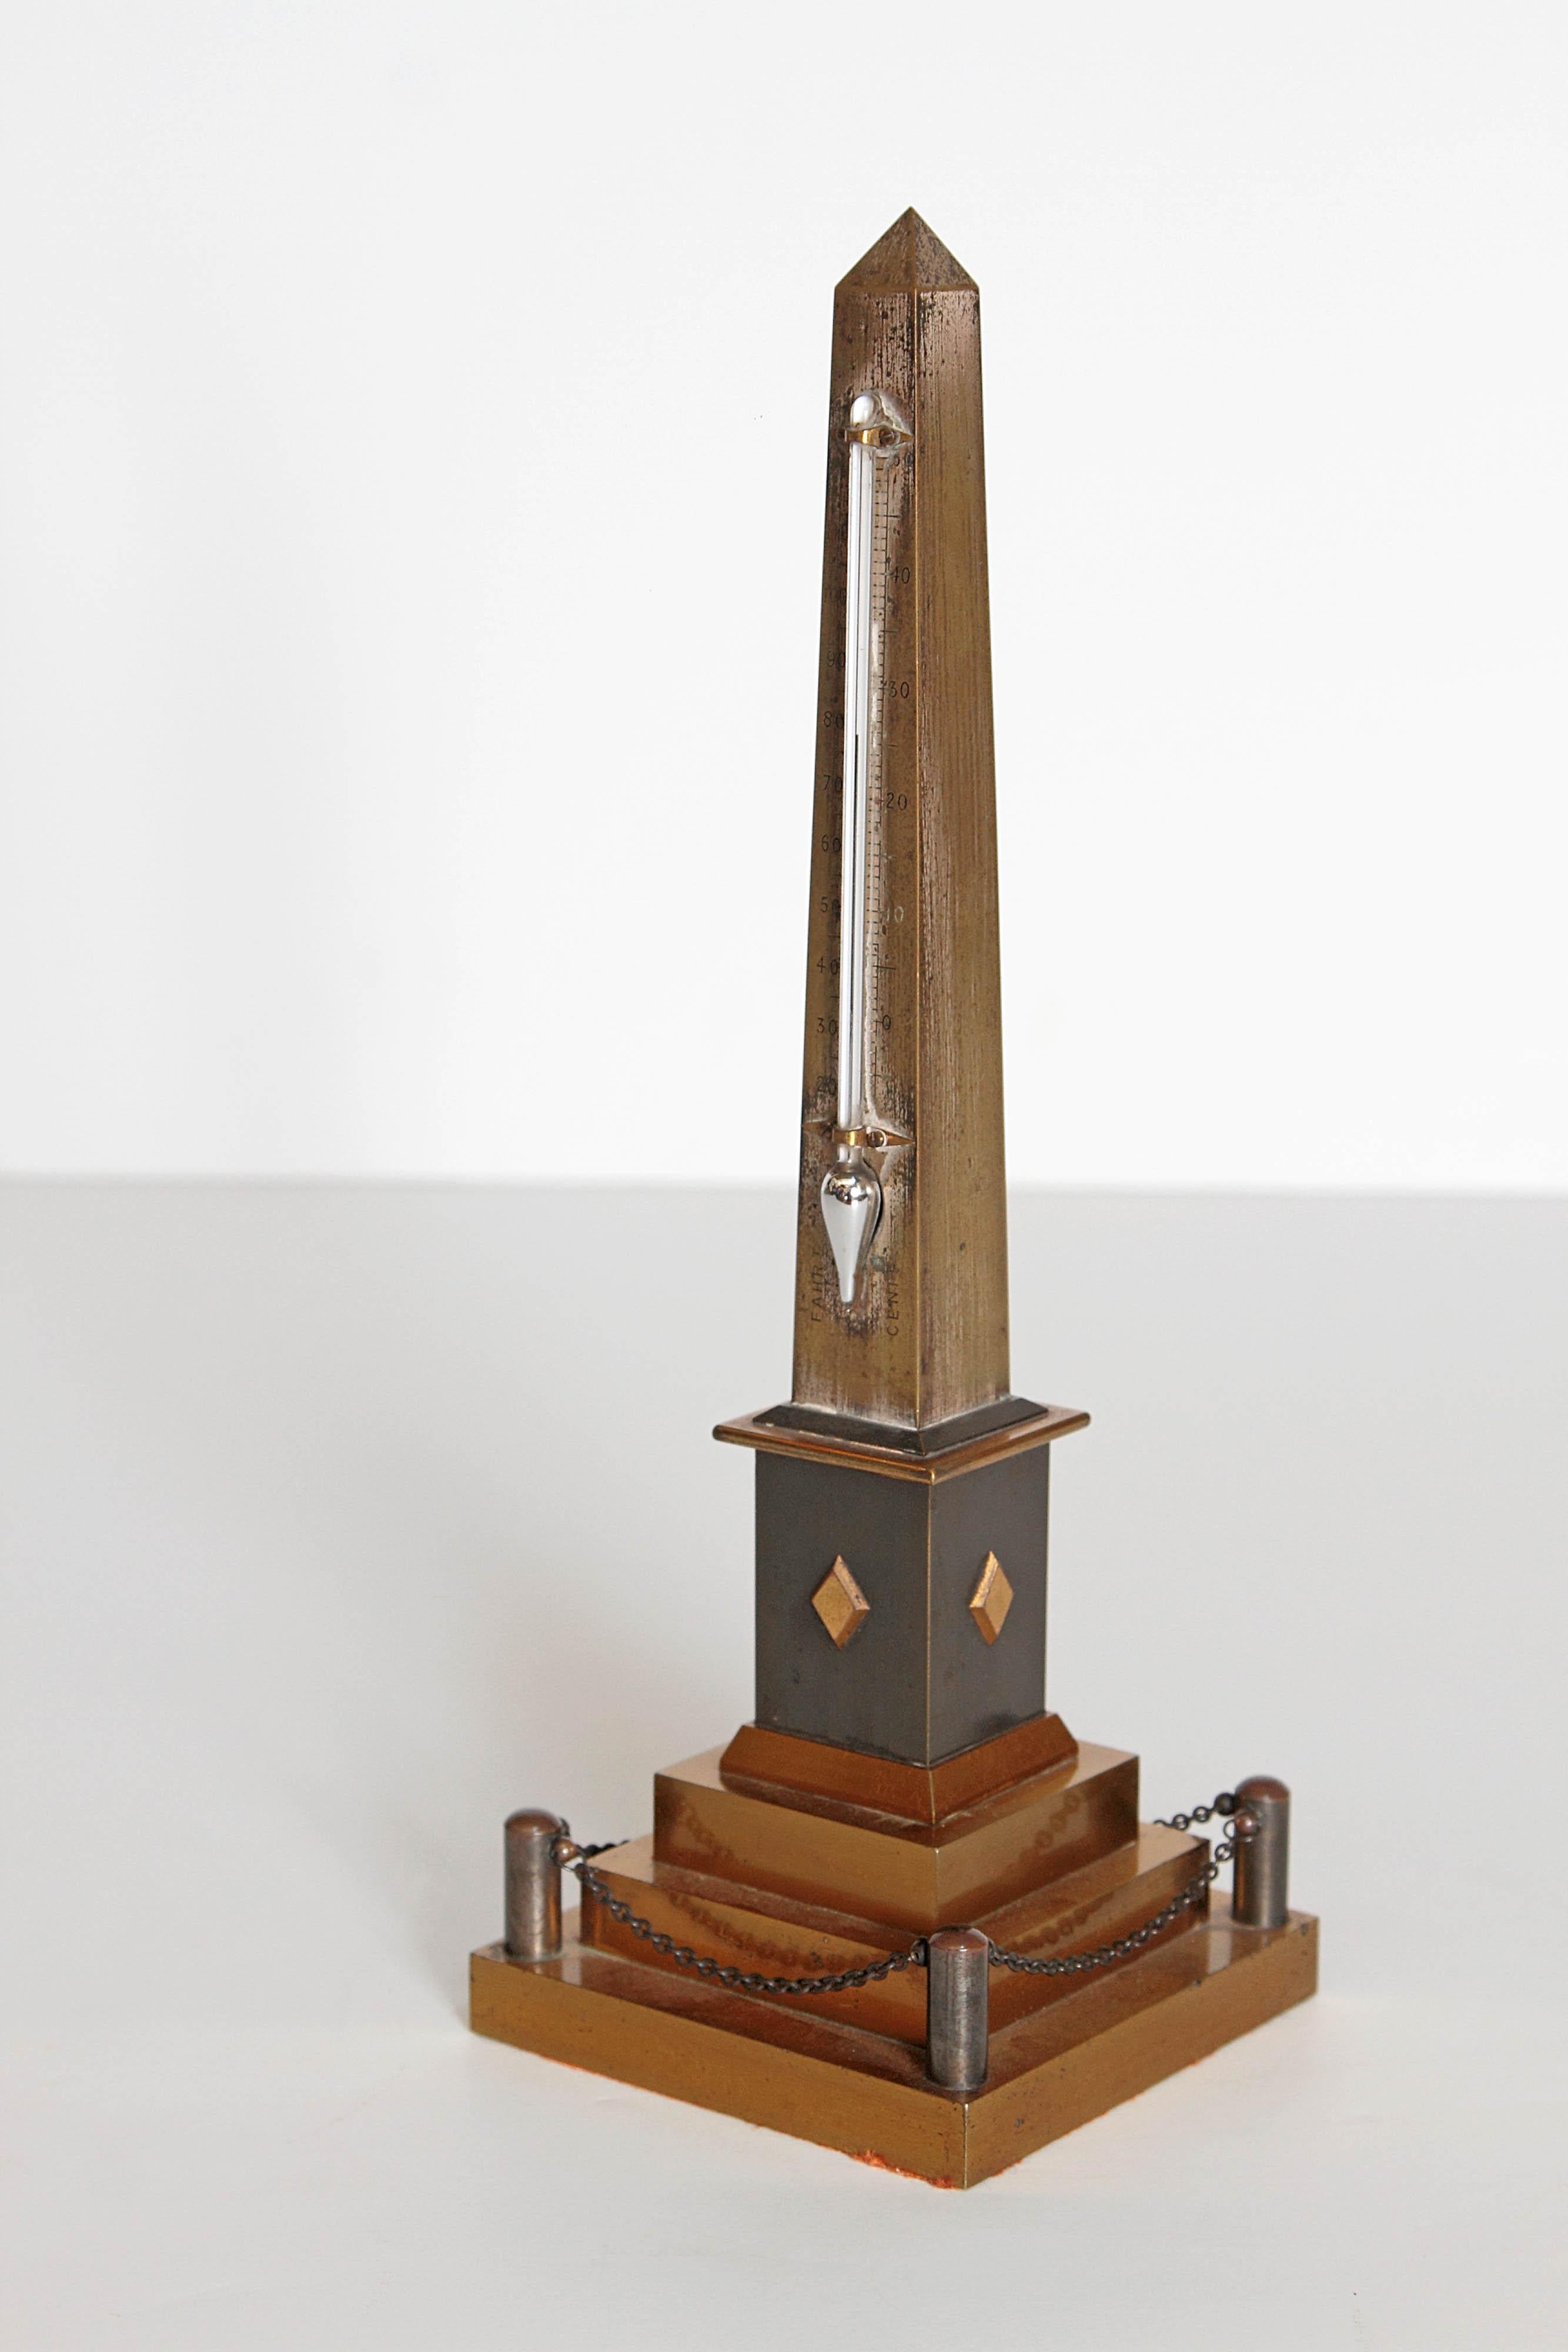 Kontinentales Grand Tour-Obelisk-thermometer aus dem frühen 19. Jahrhundert (Europäisch)